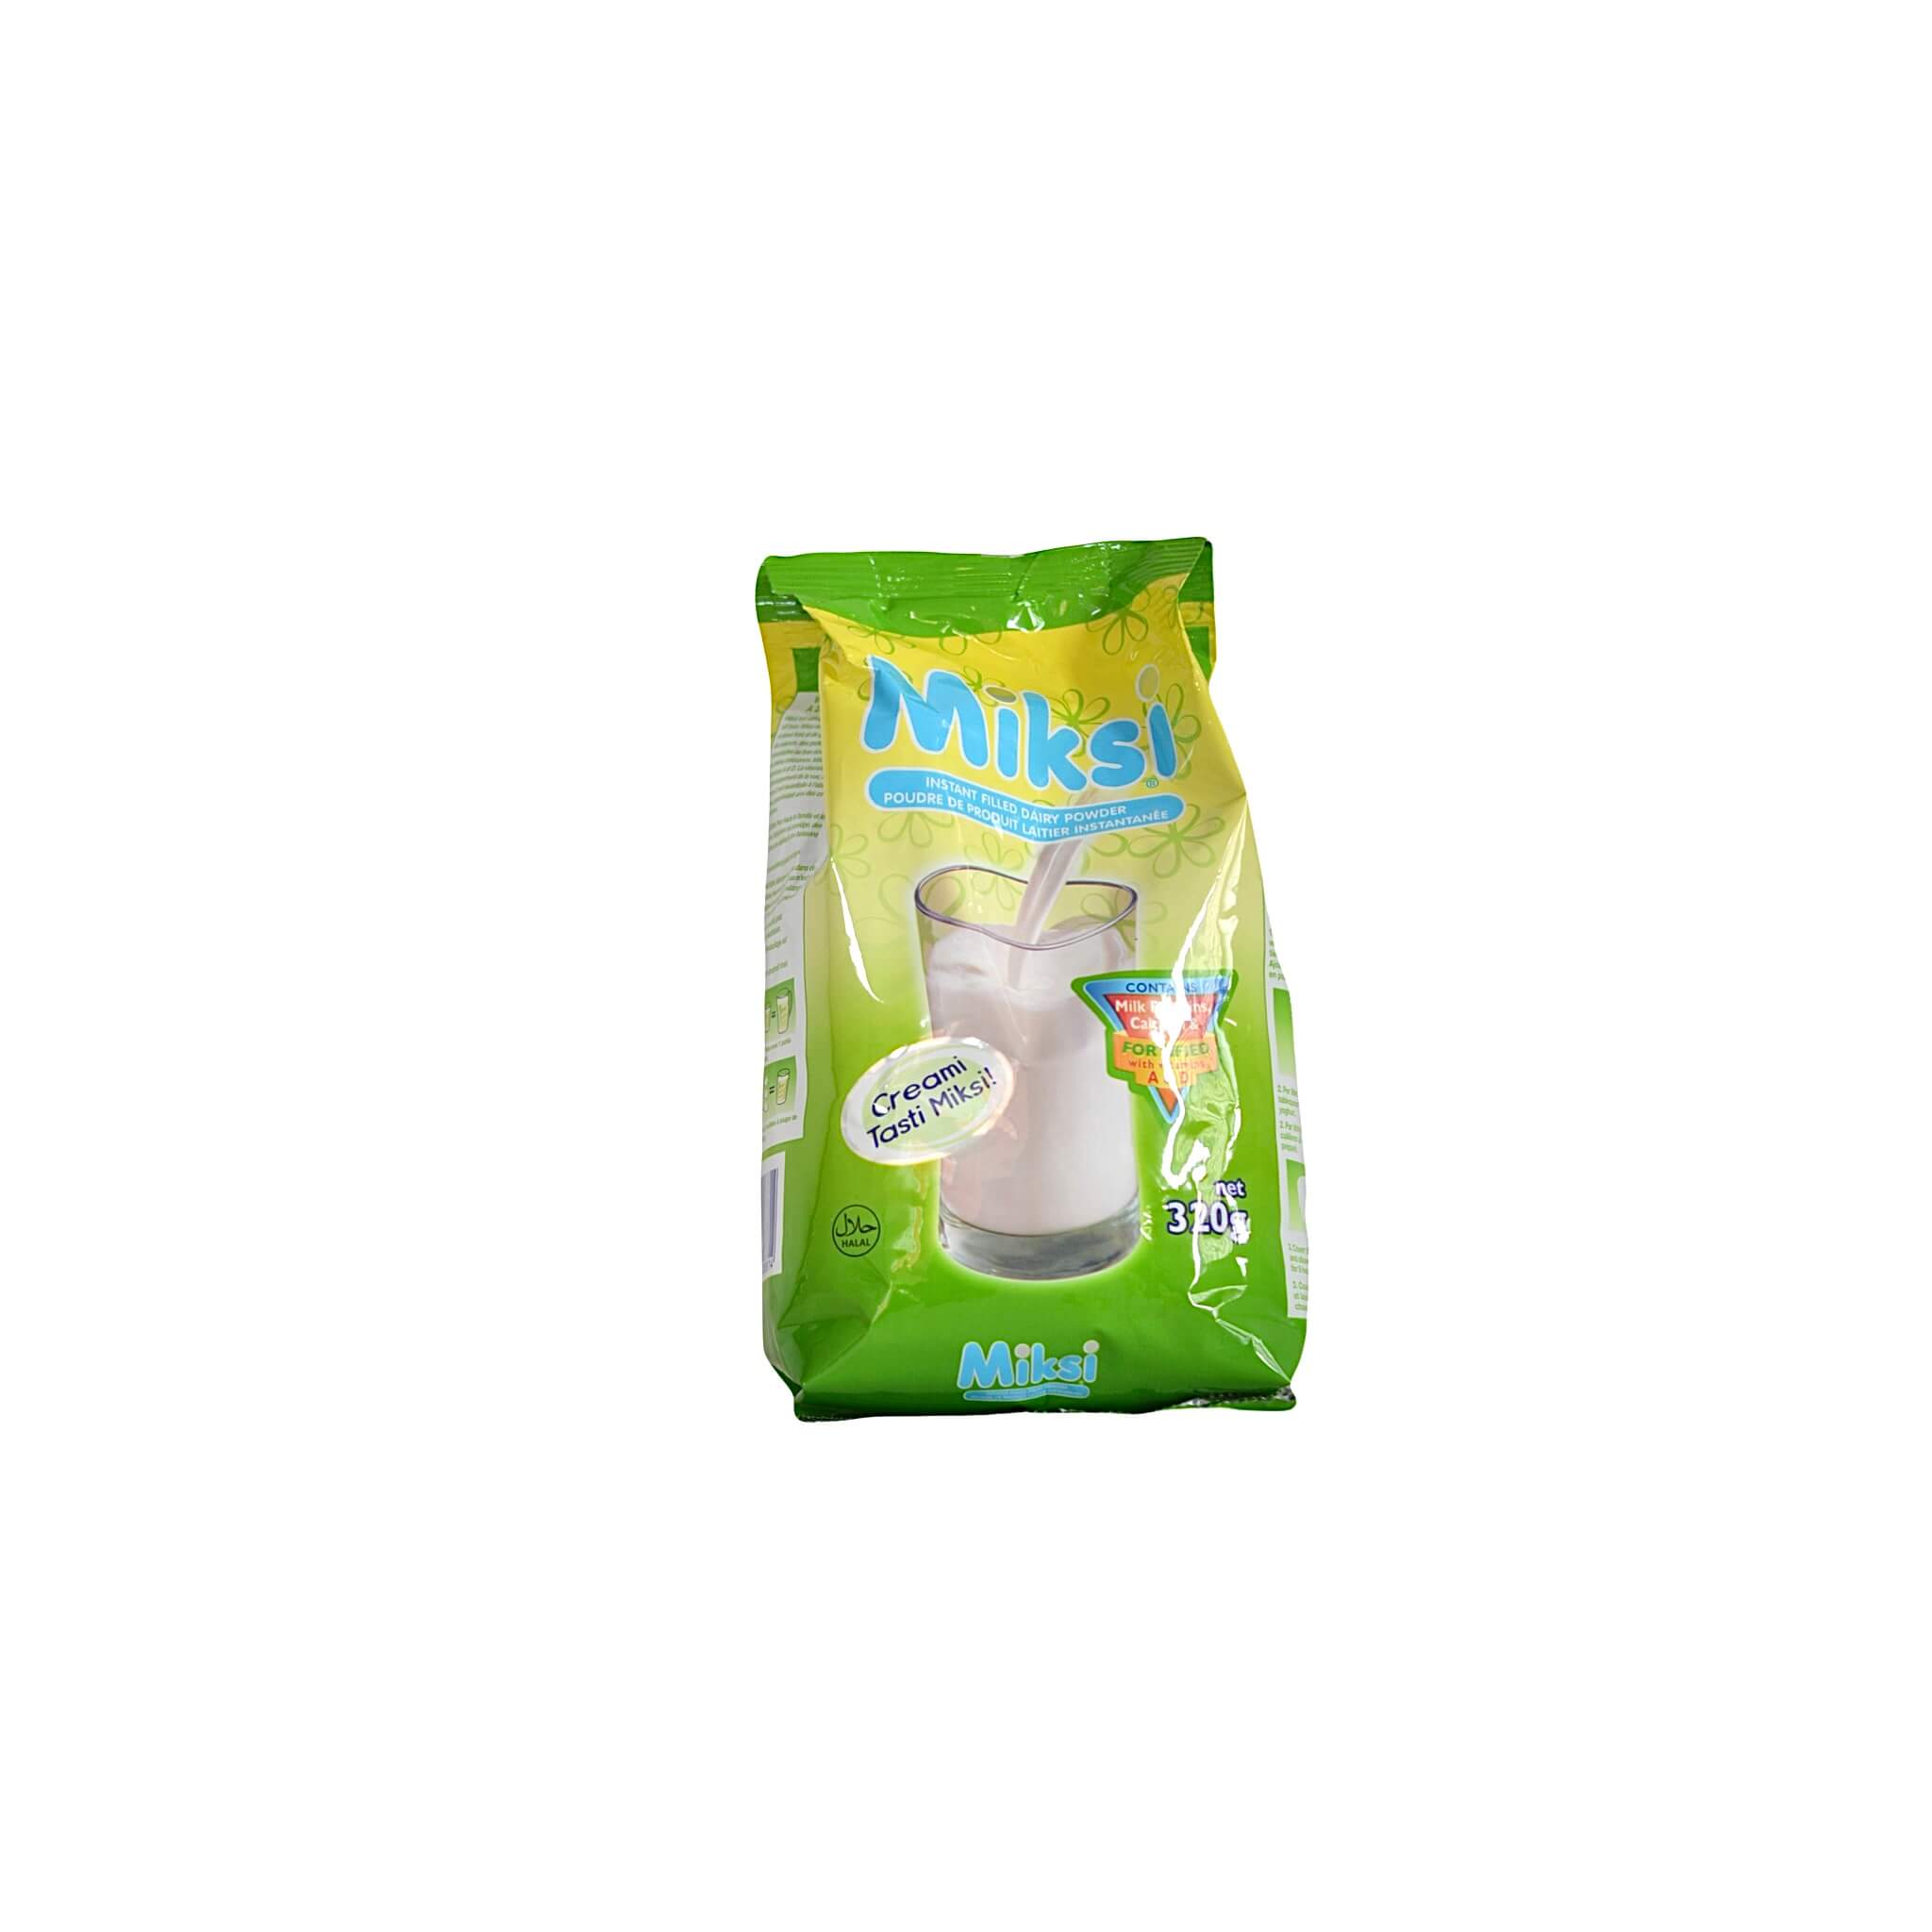 350g Sachet of Milksi powder milk